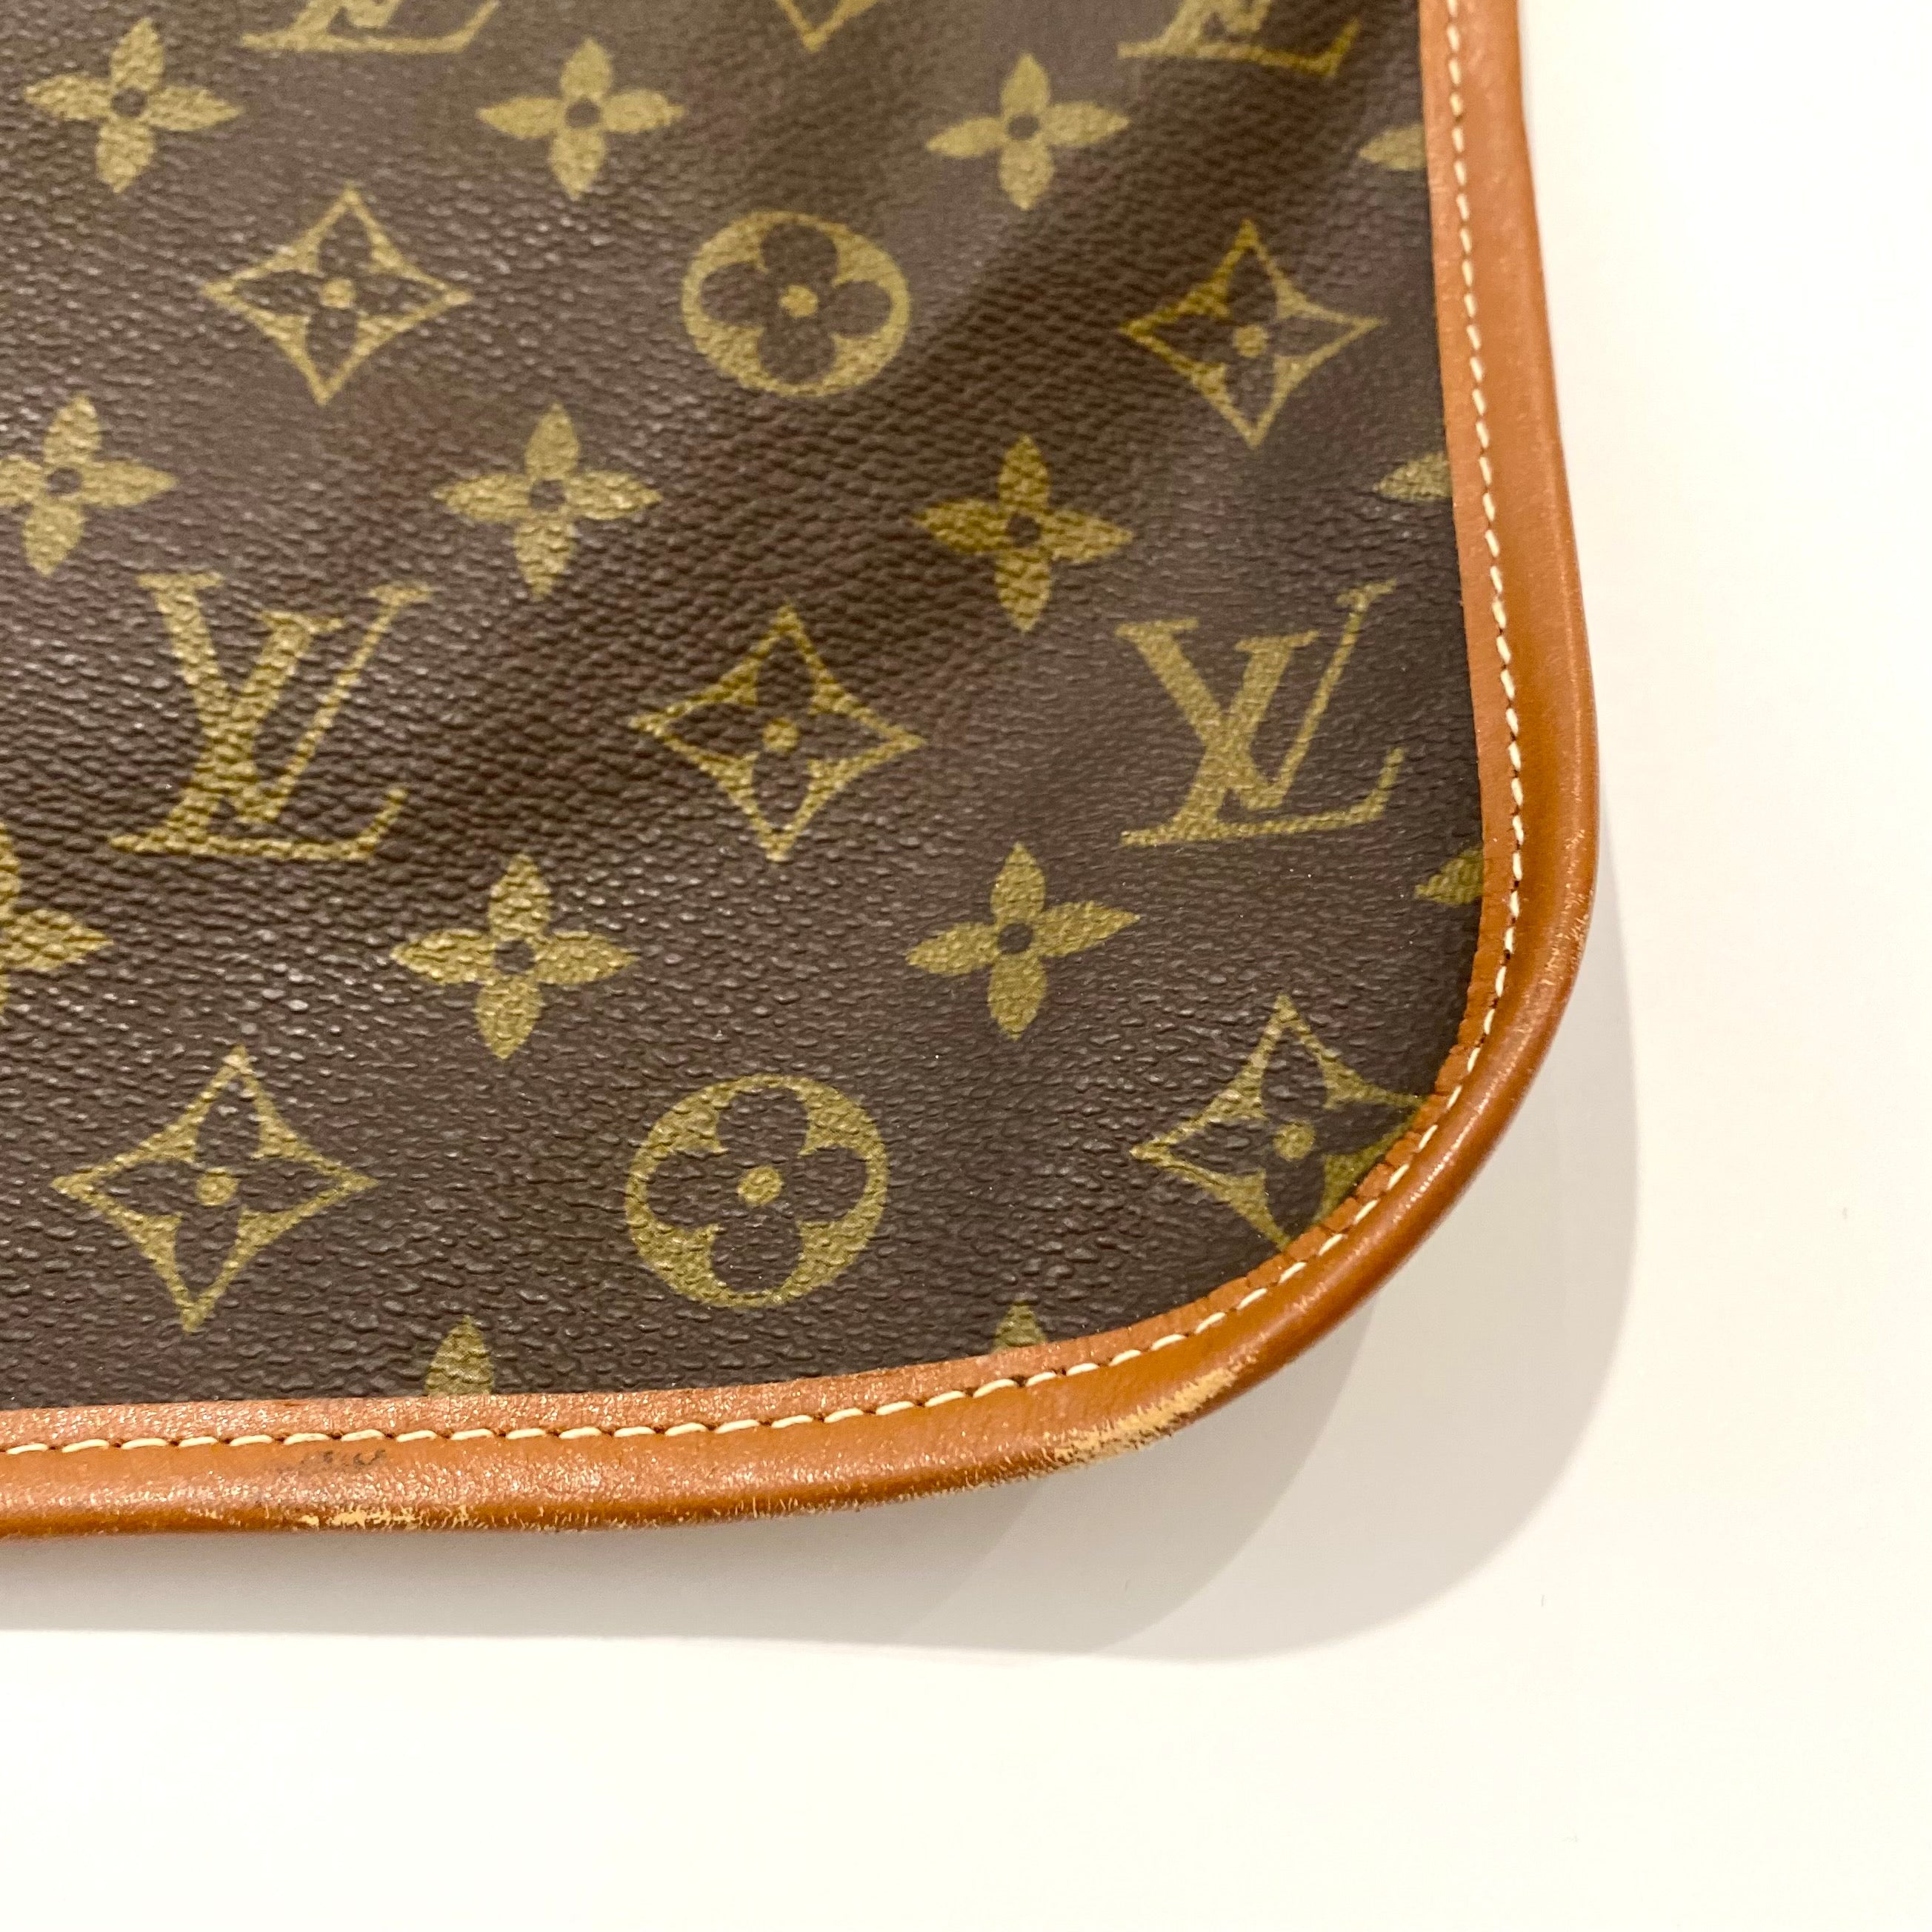 Vintage Louis Vuitton Bag 11x19 With Tag Read Description 1970-1990 #2475